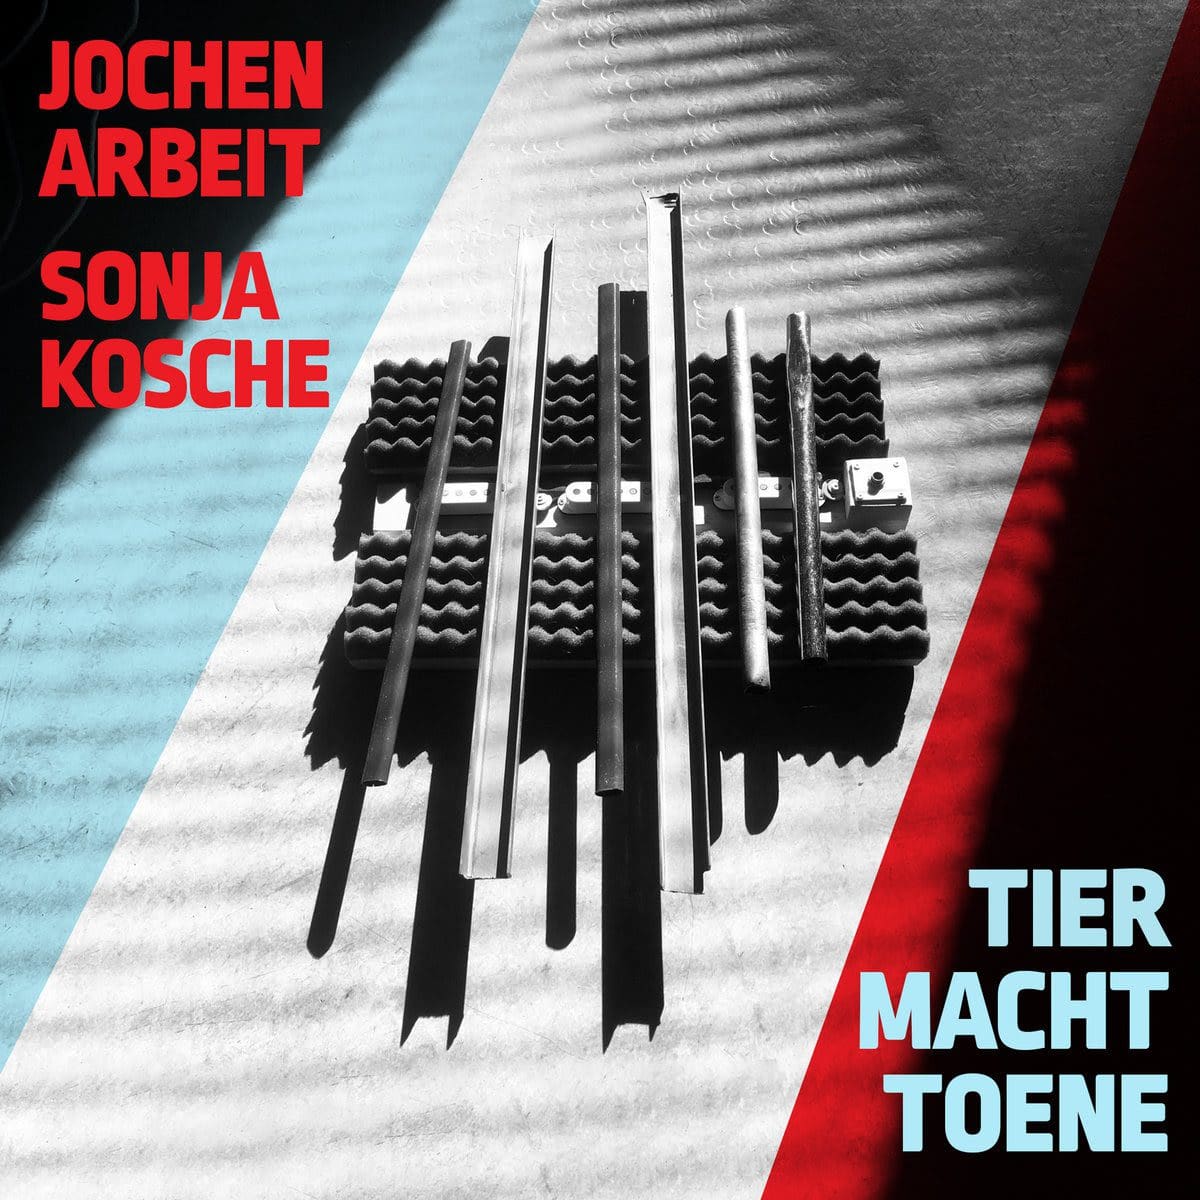 Einstürzende Neubauten guitarist Jochen Arbeit announces solo album 'Tier Macht Töne' ('Animal Makes Sounds') and shares first track